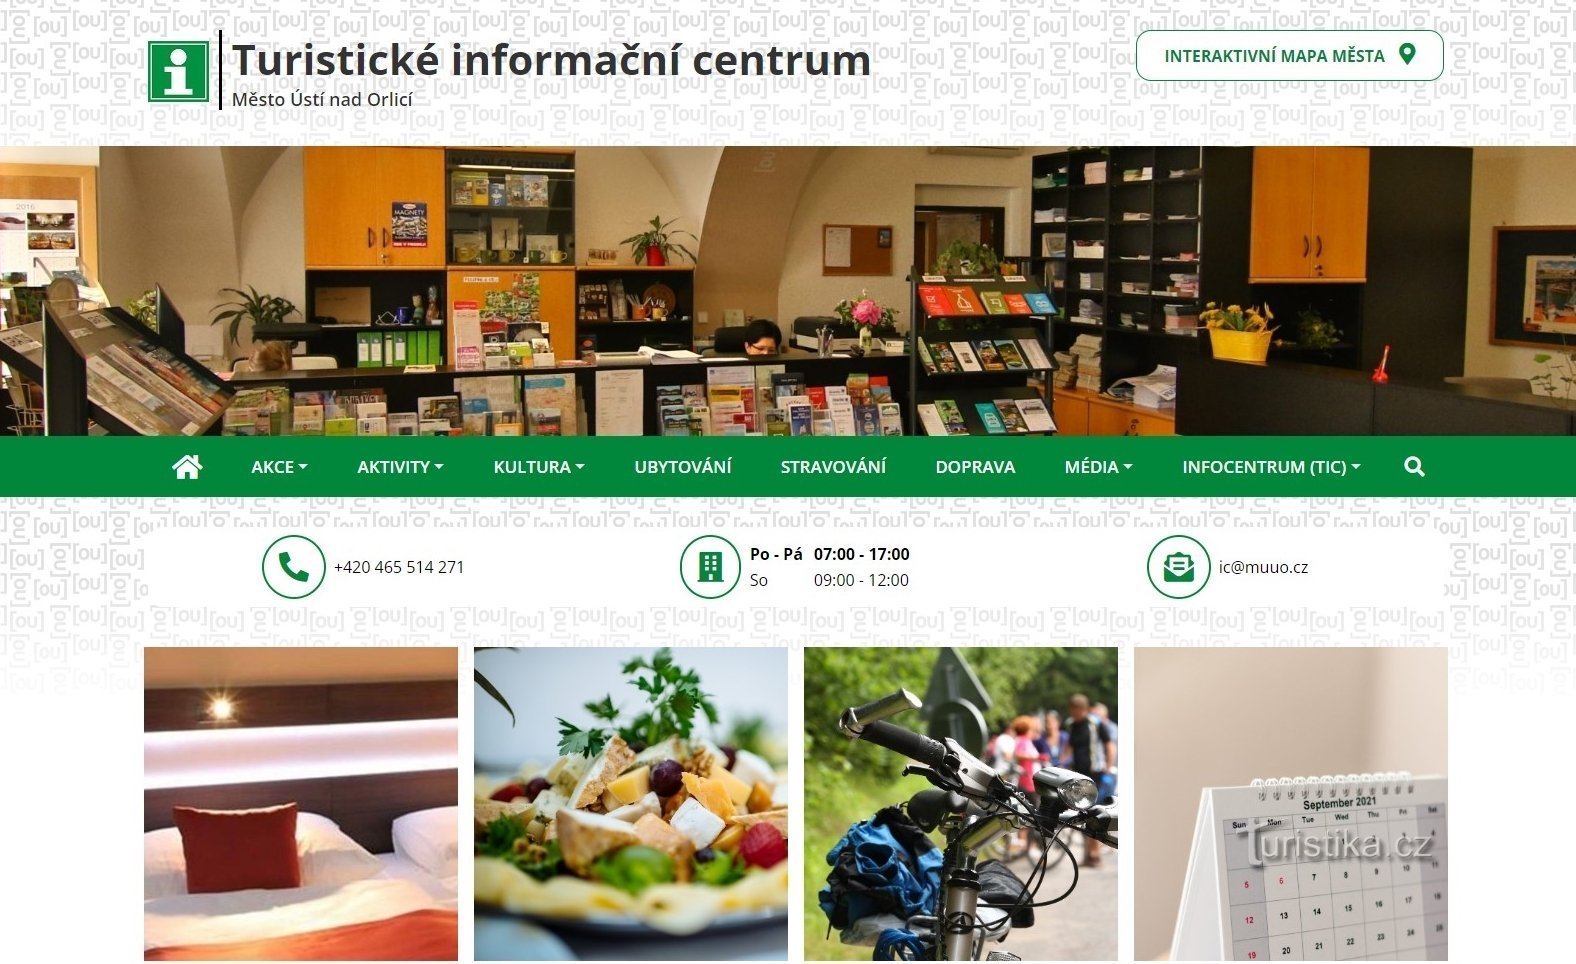 Turistické informační centrum (TIC) města Ústí nad Orlicí